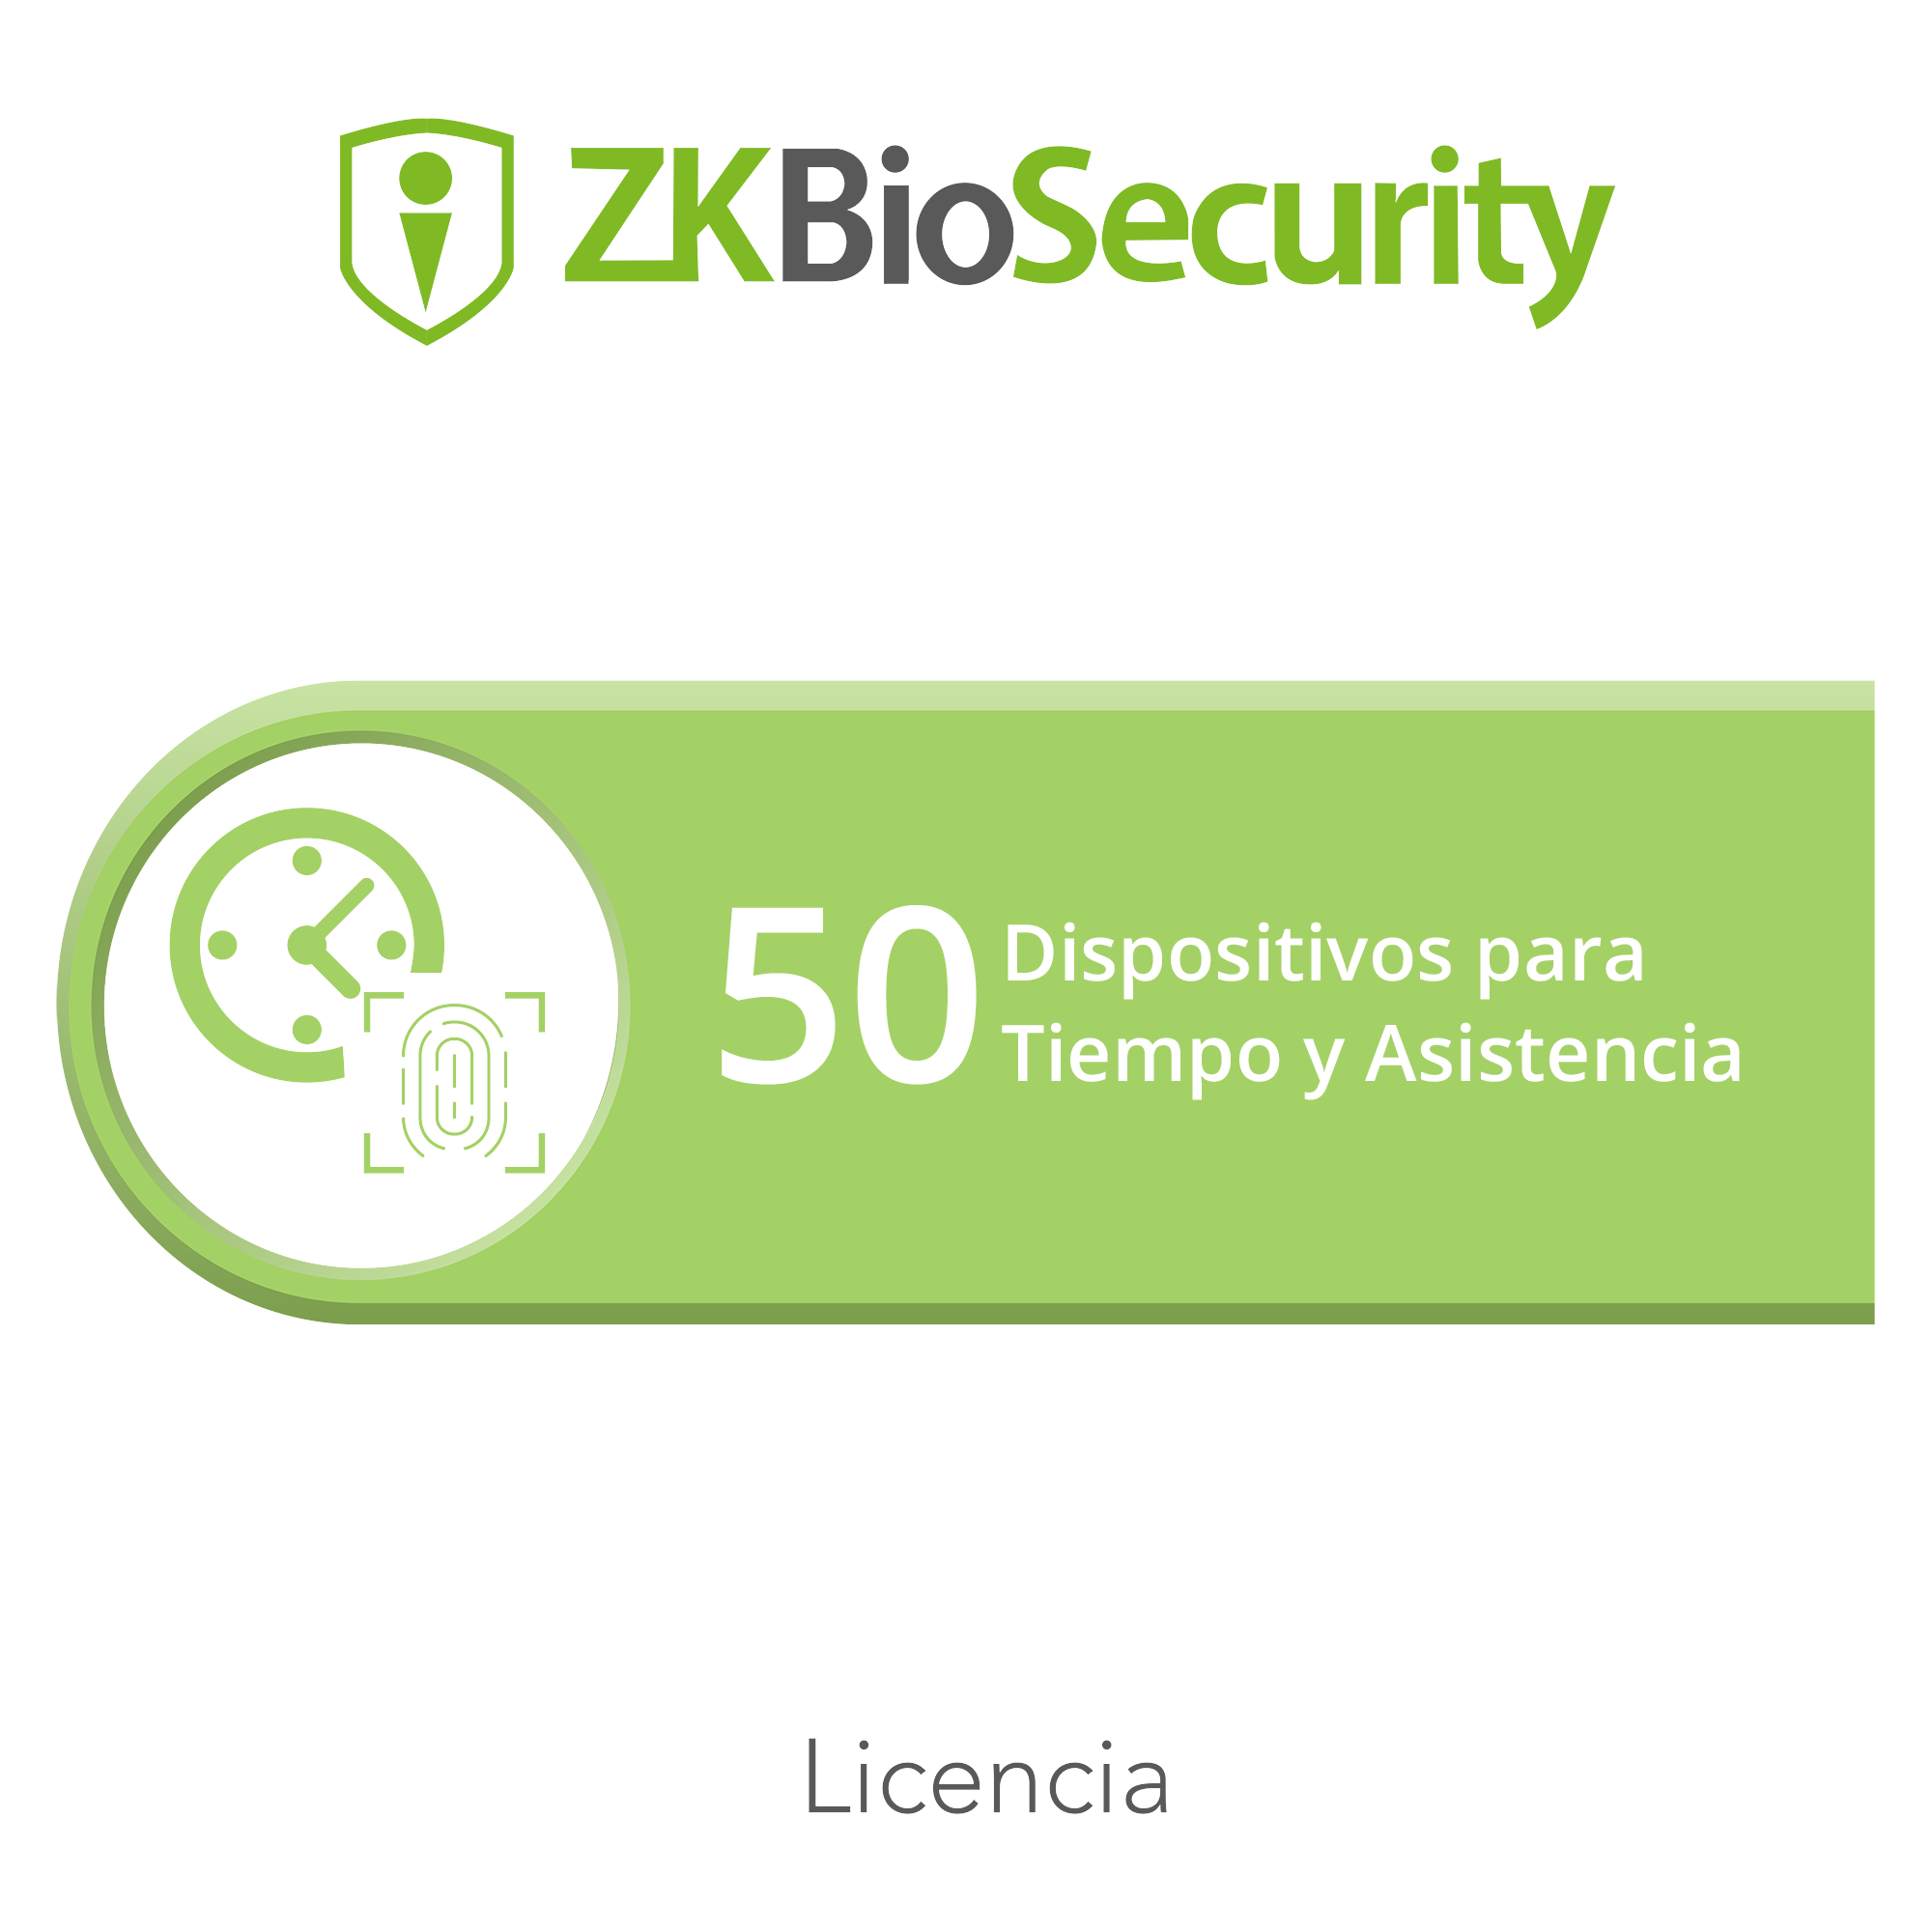 Licencia para ZKBiosecurity permite gestionar hasta 50 dispositivos para tiempo y asistencia